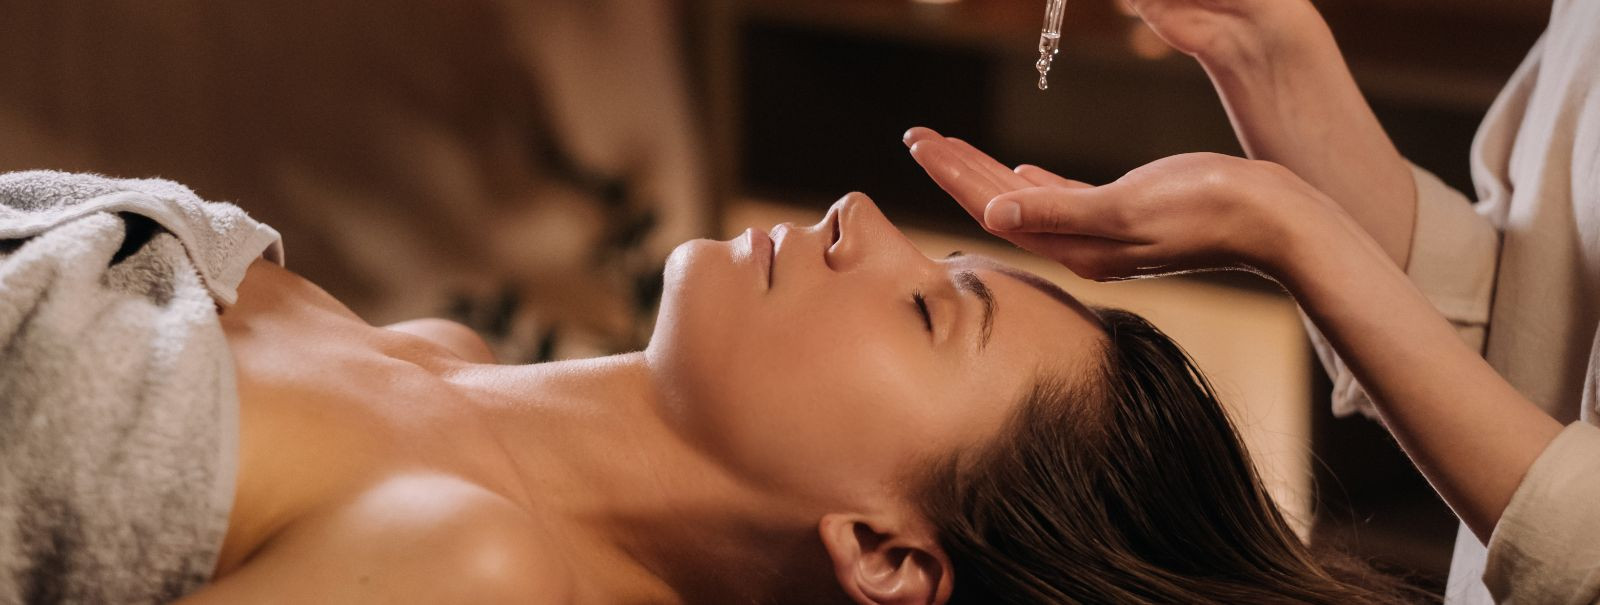 Aroomimassaaž, tuntud ka kui aroomiteraapia massaaž, on terapeutiline praktika, mis ühendab eeterlike õlide looduslikud tervendavad omadused massaažiteraapia ra